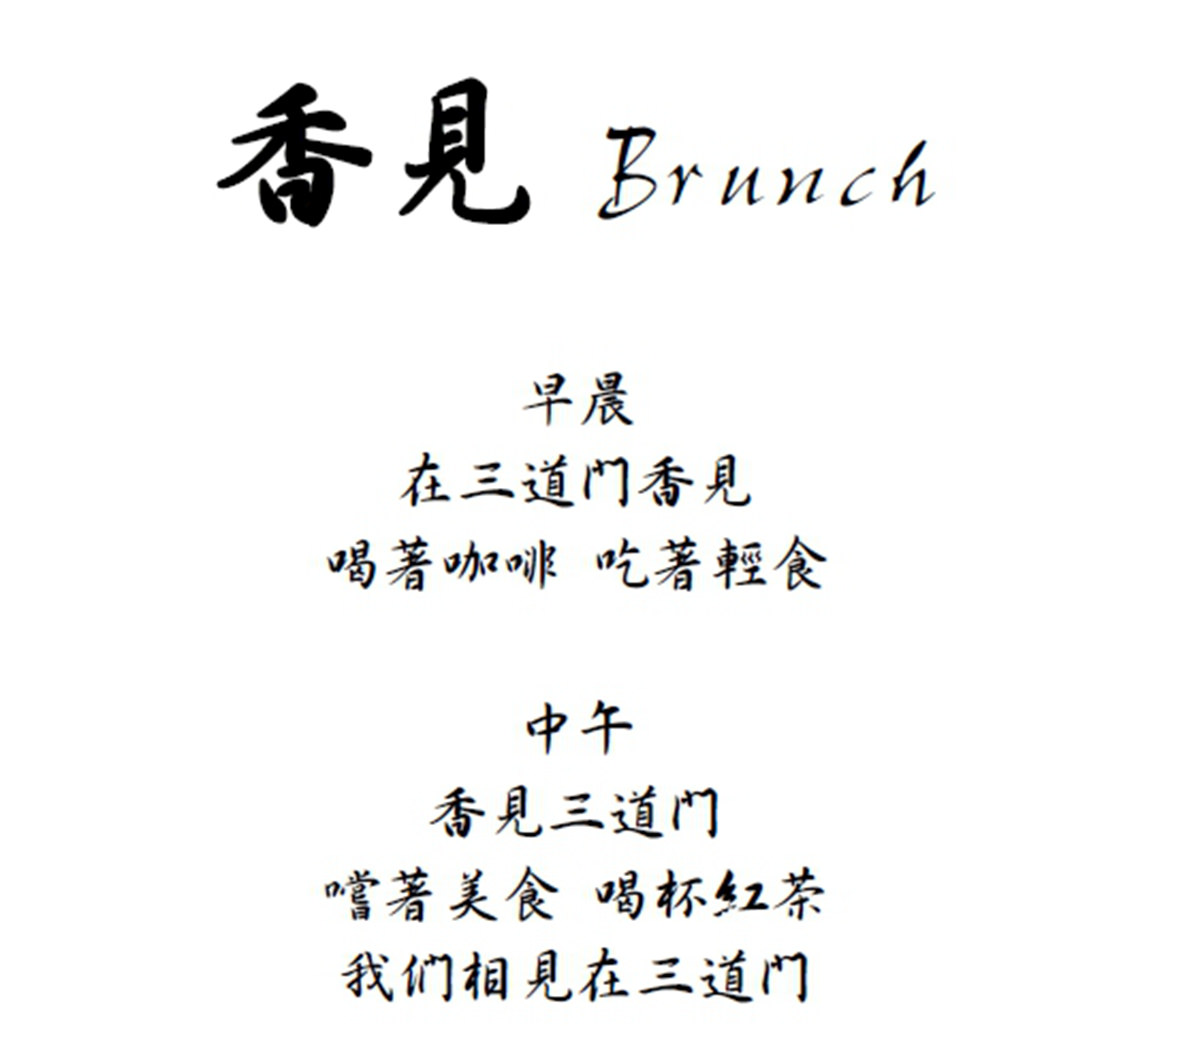 台南推薦早午餐晚餐火鍋咖啡甜點的複合式餐飲店-三道門 香見 Brunch